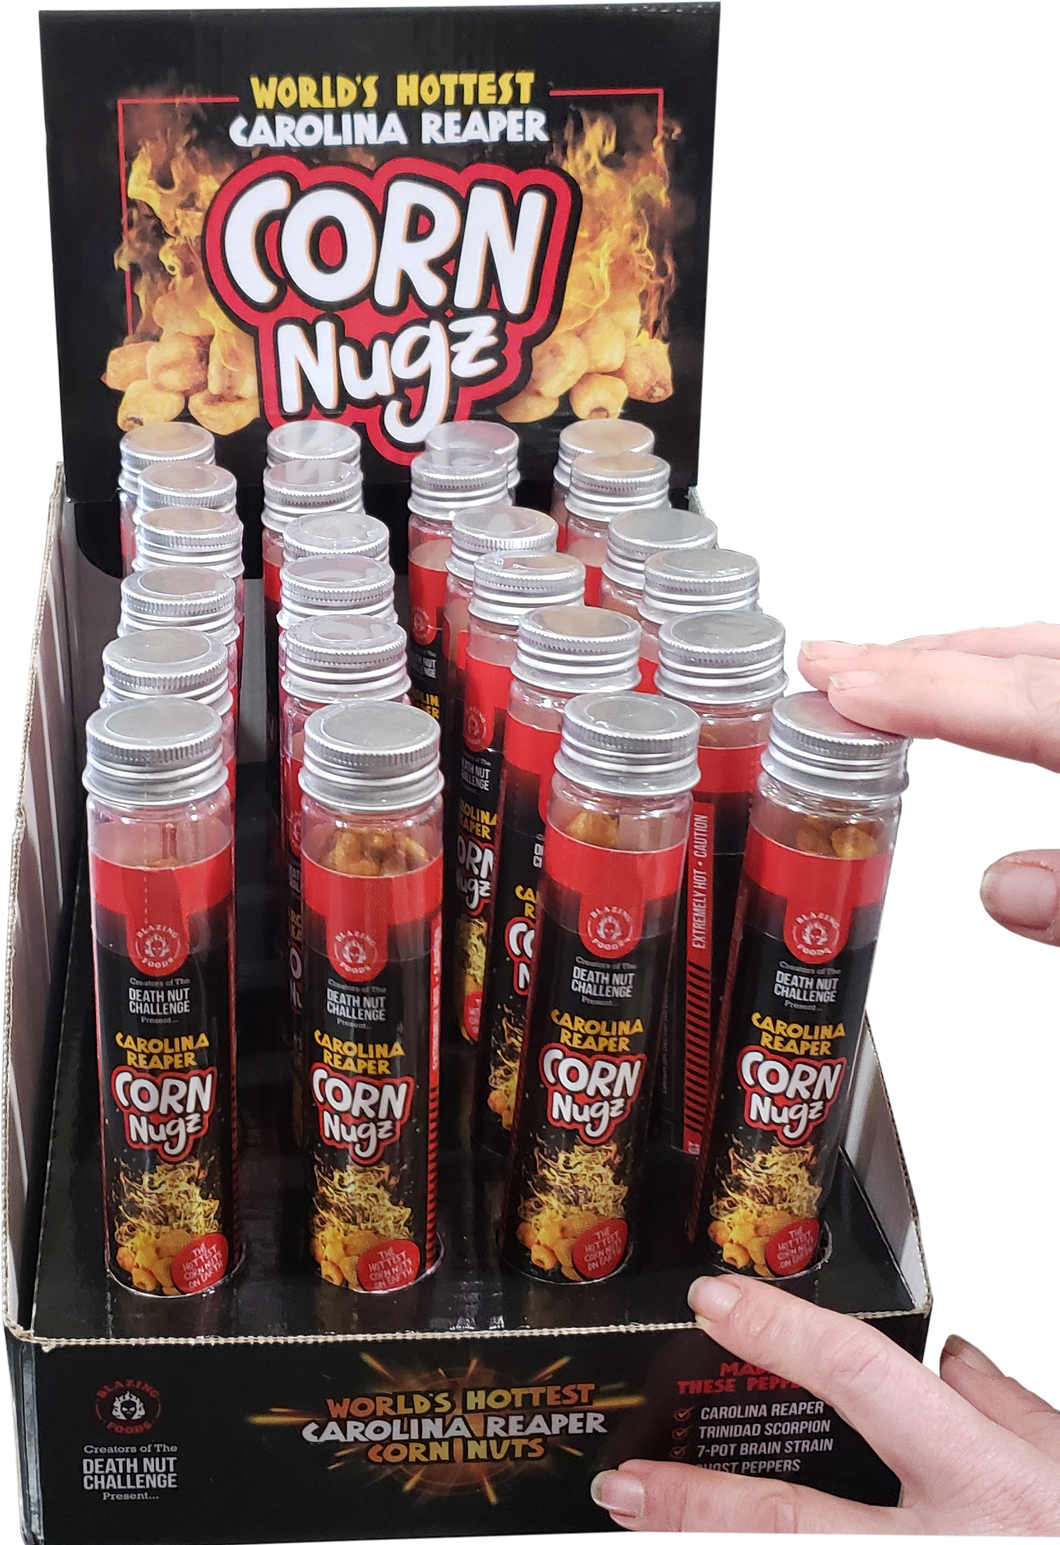 Carolina Reaper Corn Nugz Gift Tube 24 Pack Retail Display